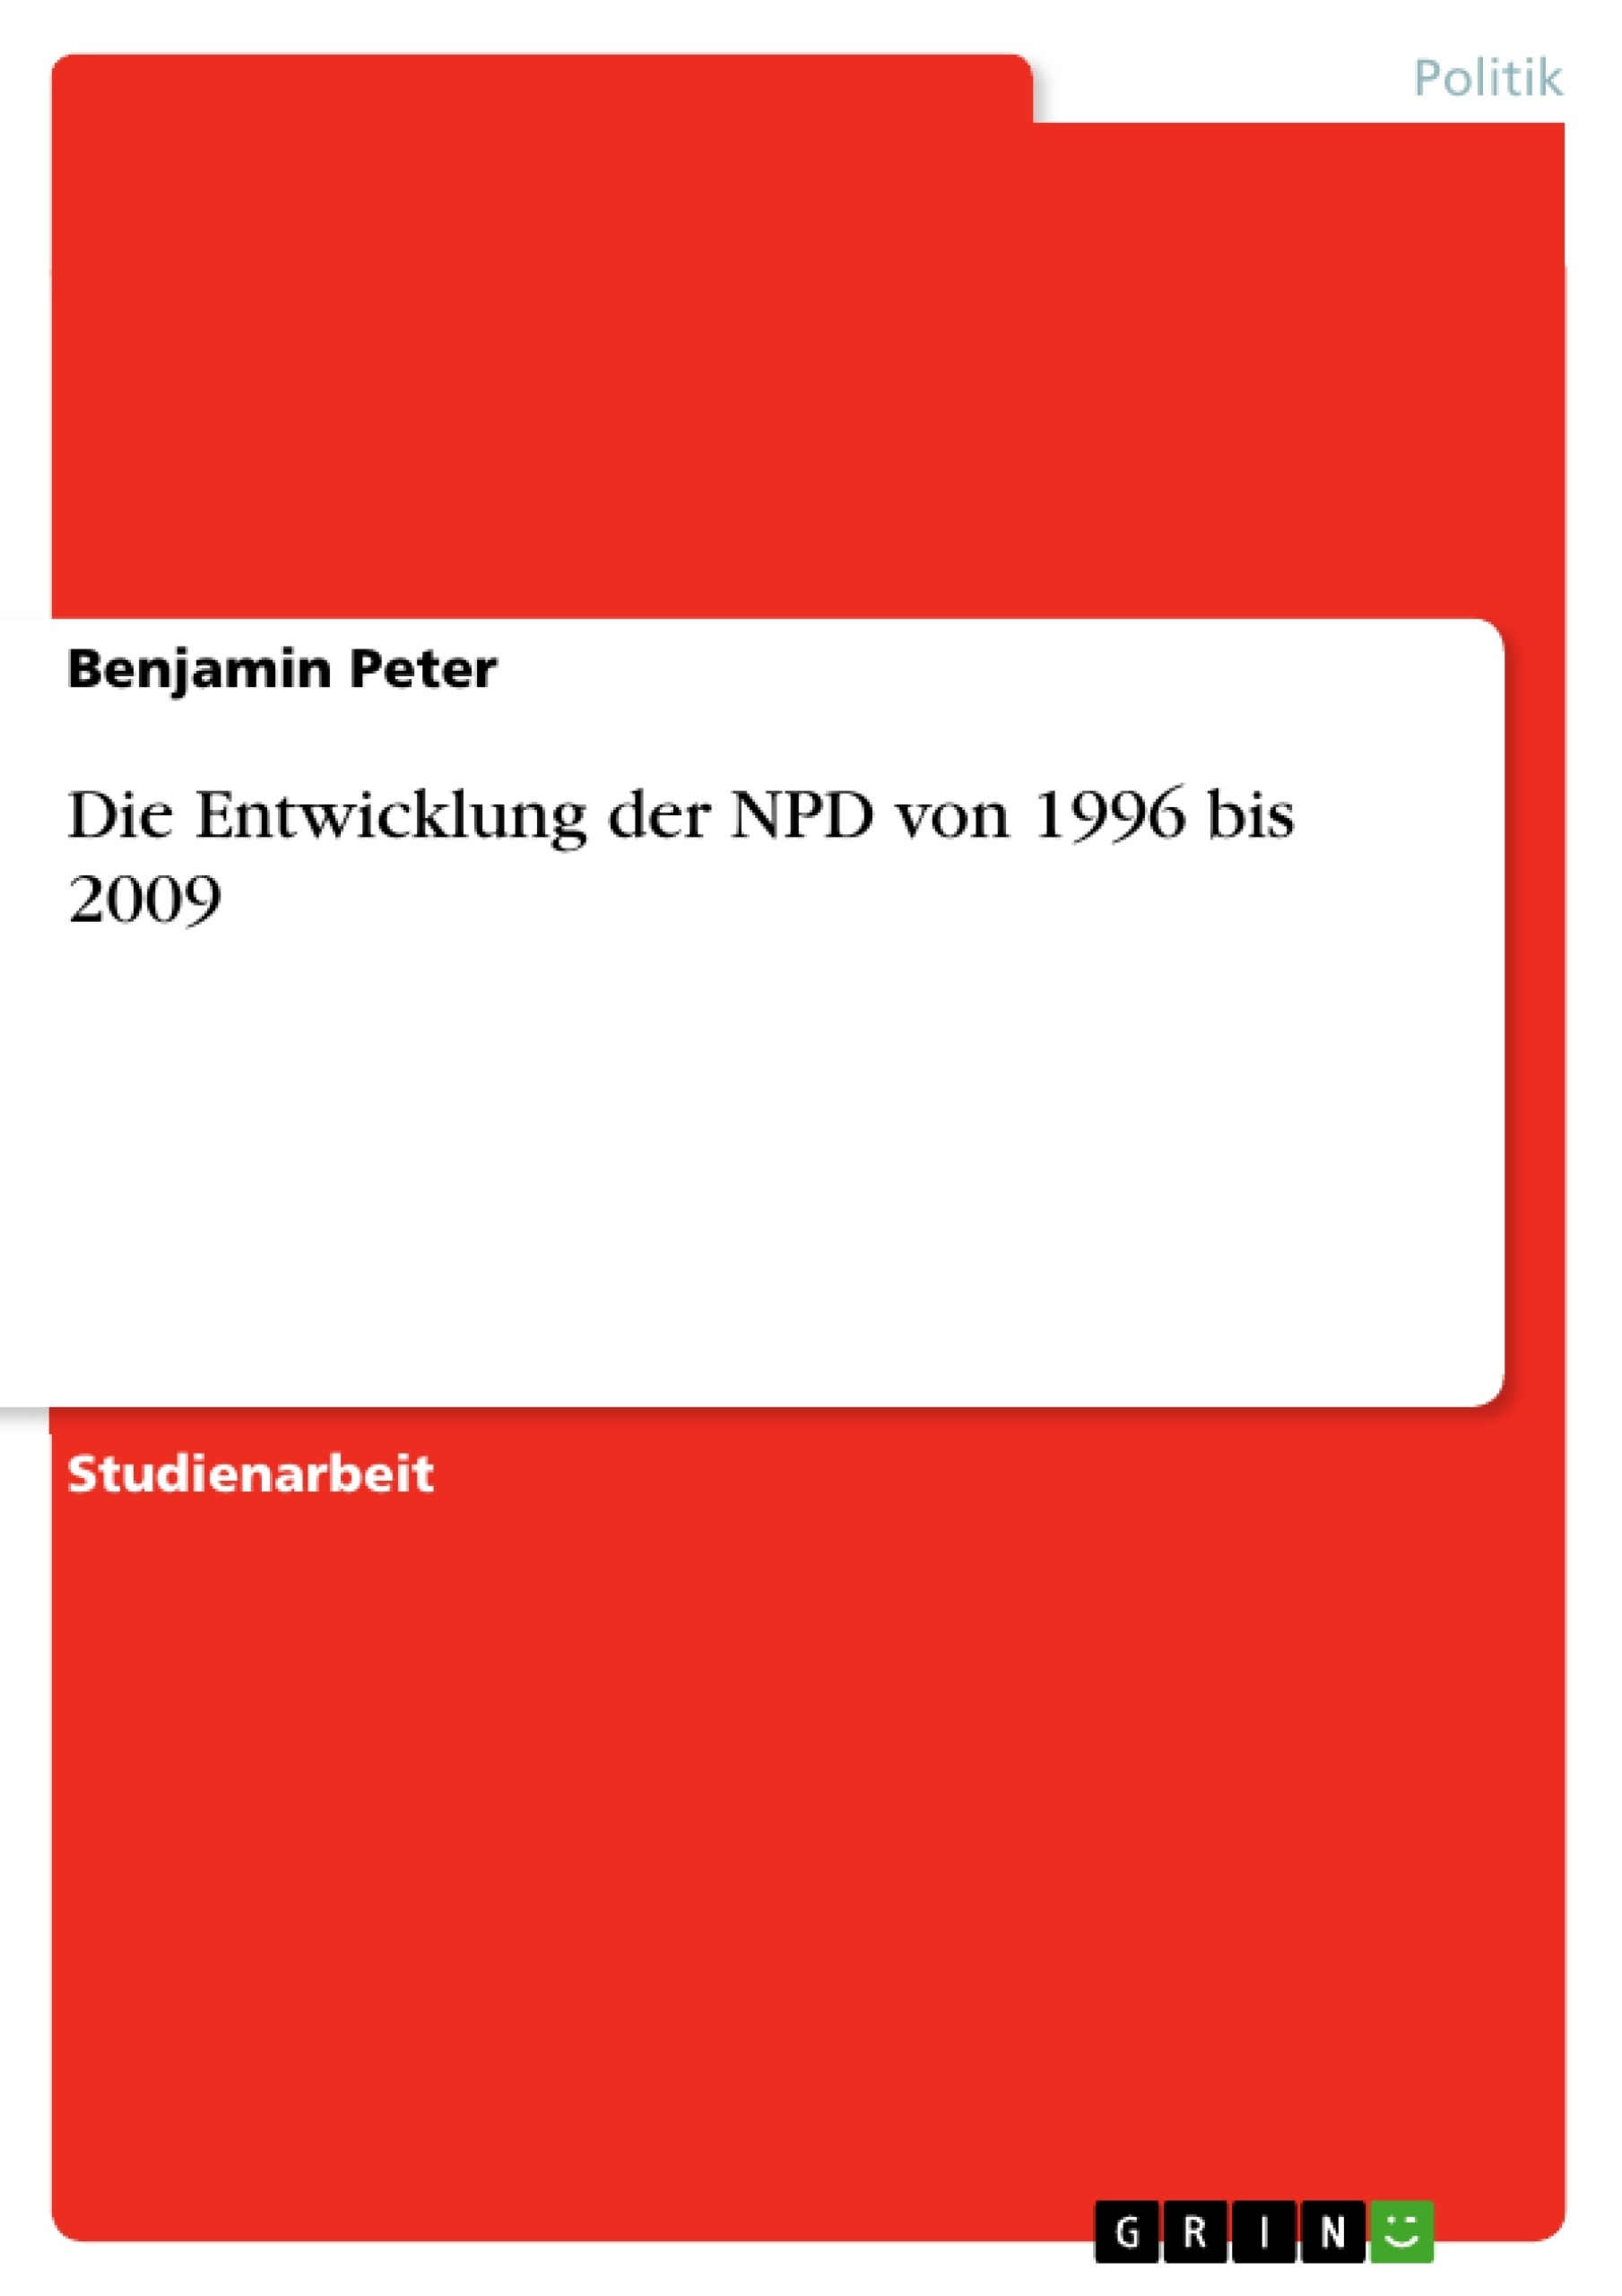 Título: Die Entwicklung der NPD von 1996 bis 2009